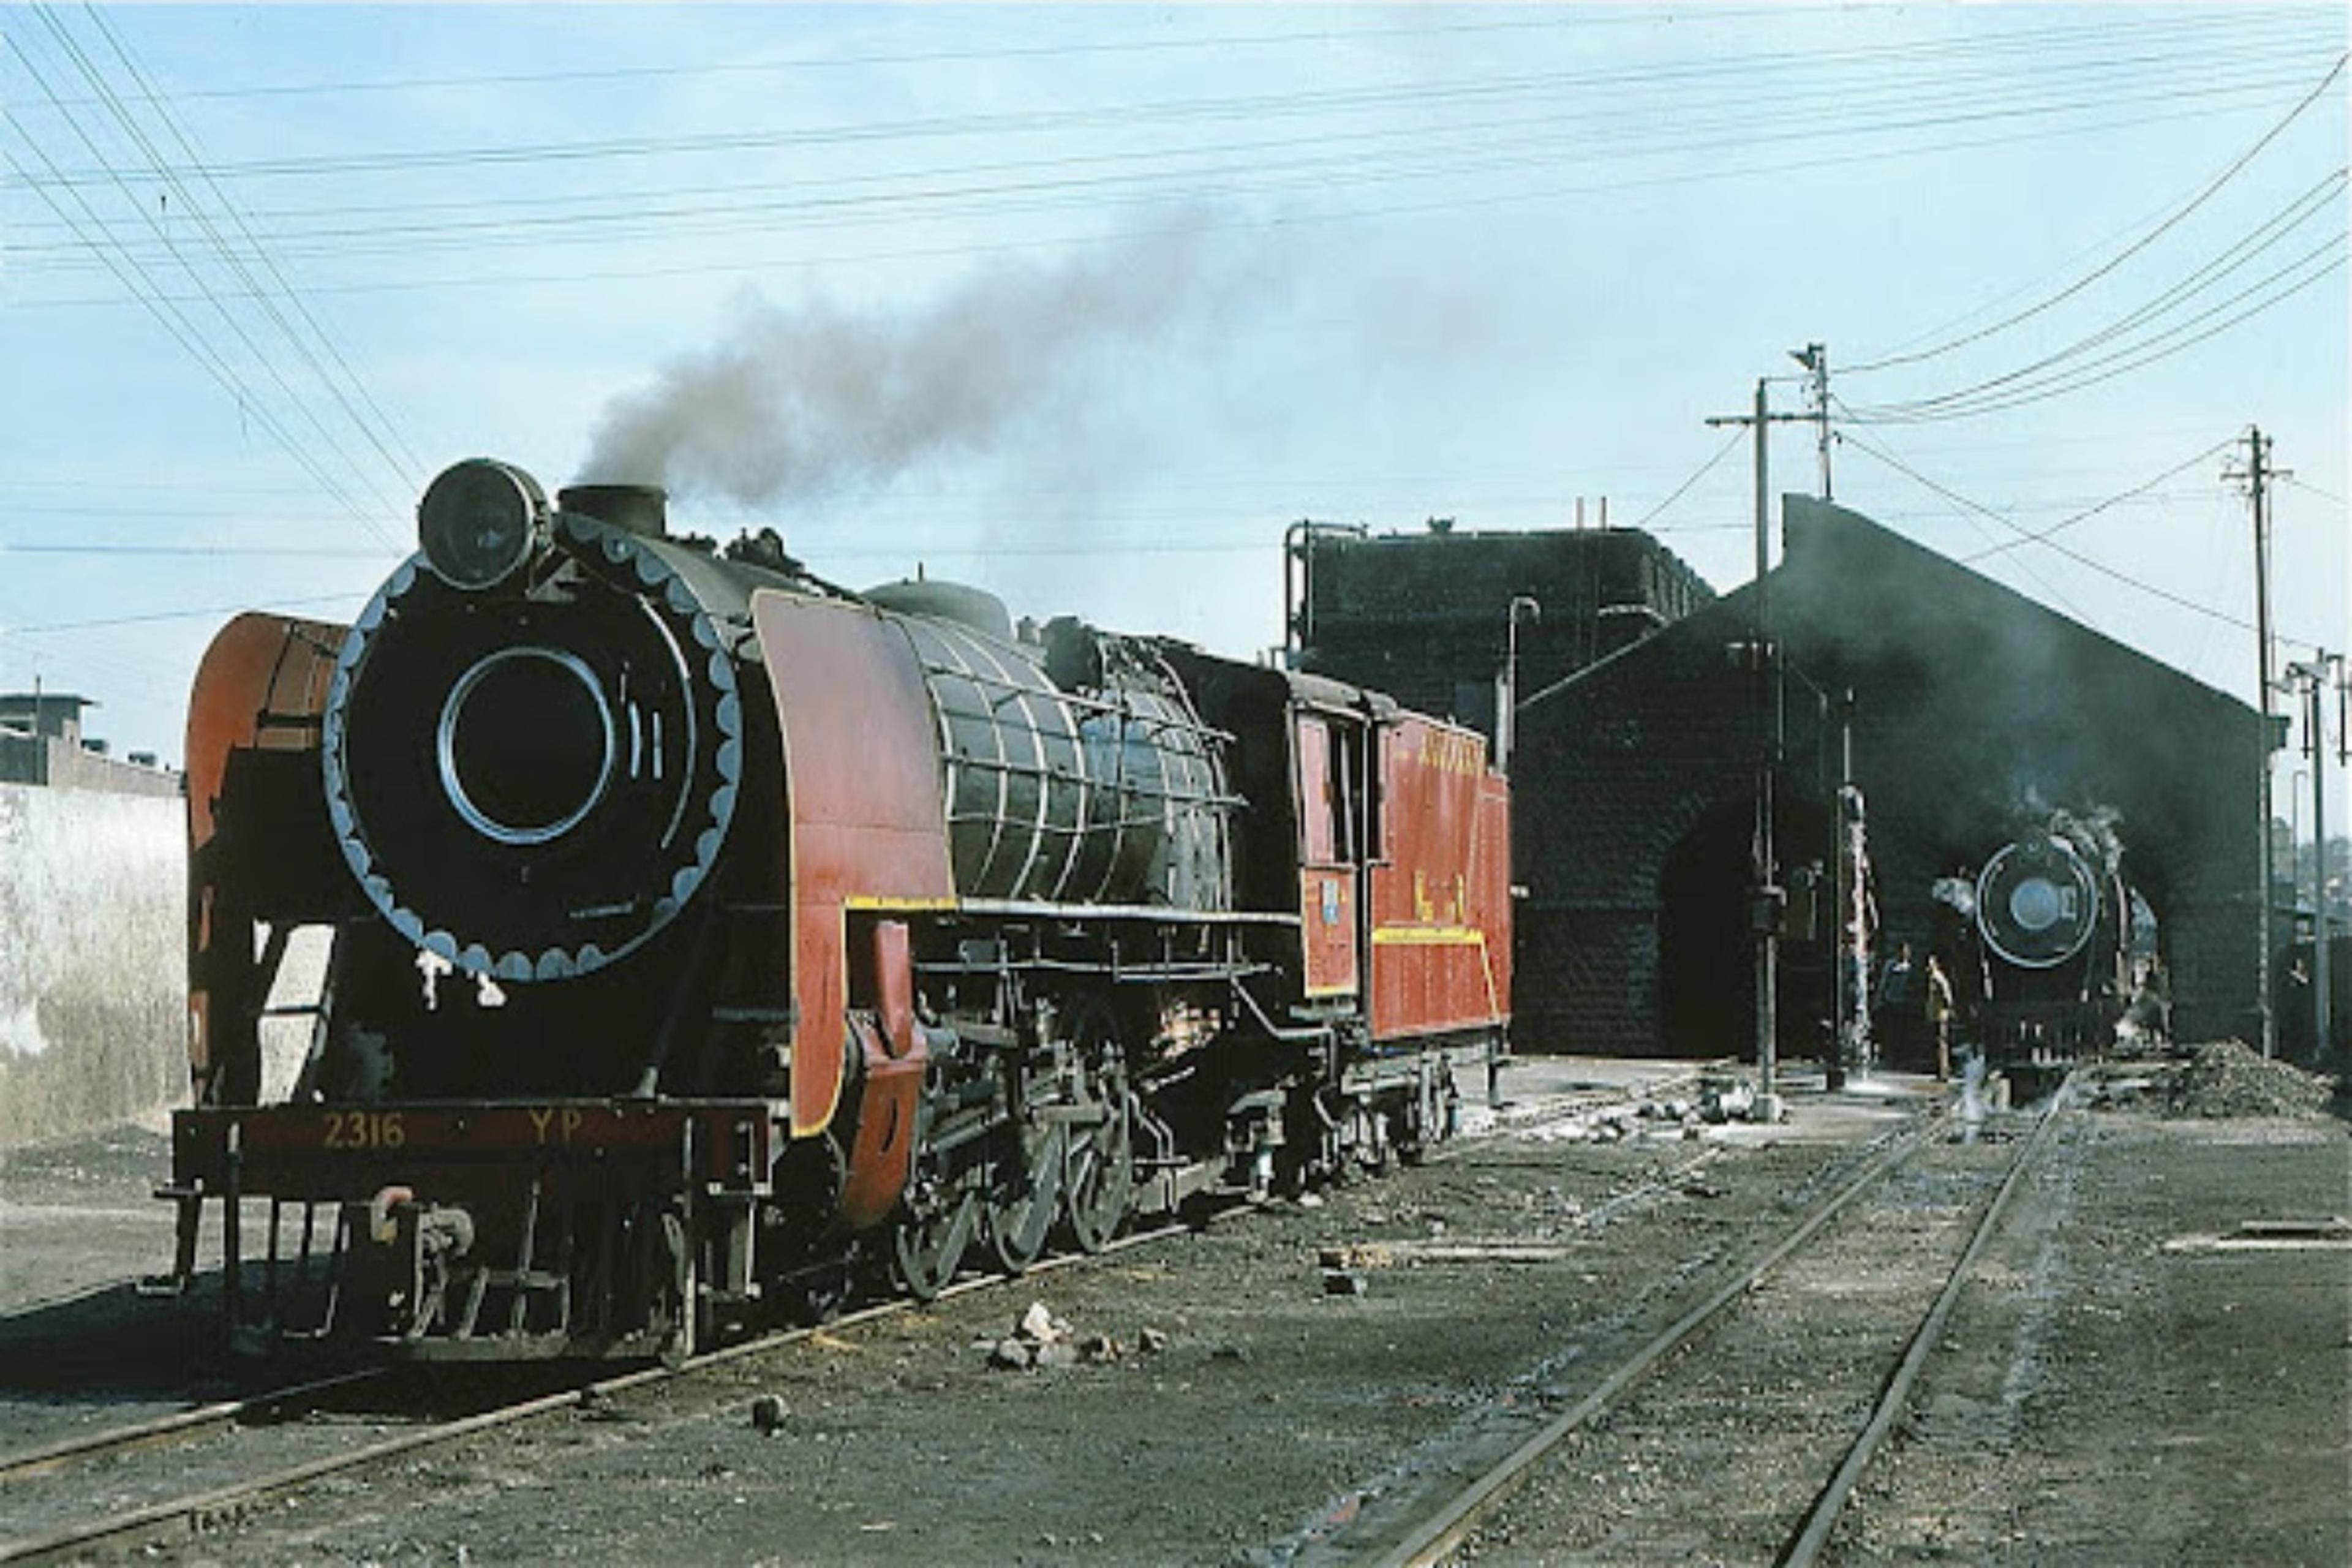 राजस्थान में रेल सेवा के 150 साल पूरे, यहां से शुरू हुआ था ट्रेन का सुहाना सफर